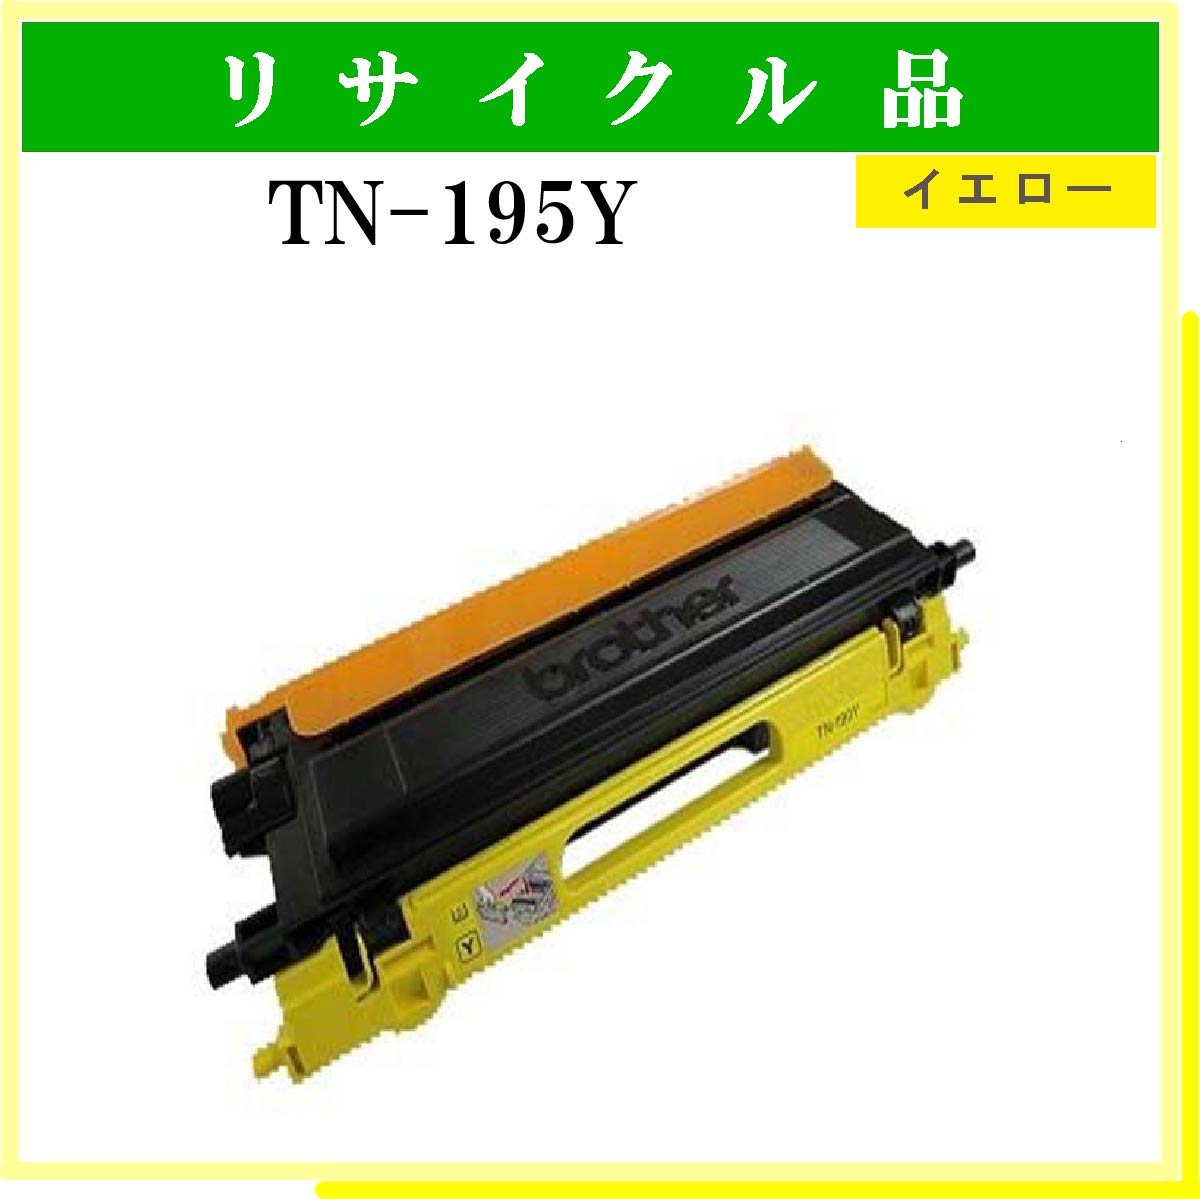 TN-195Y